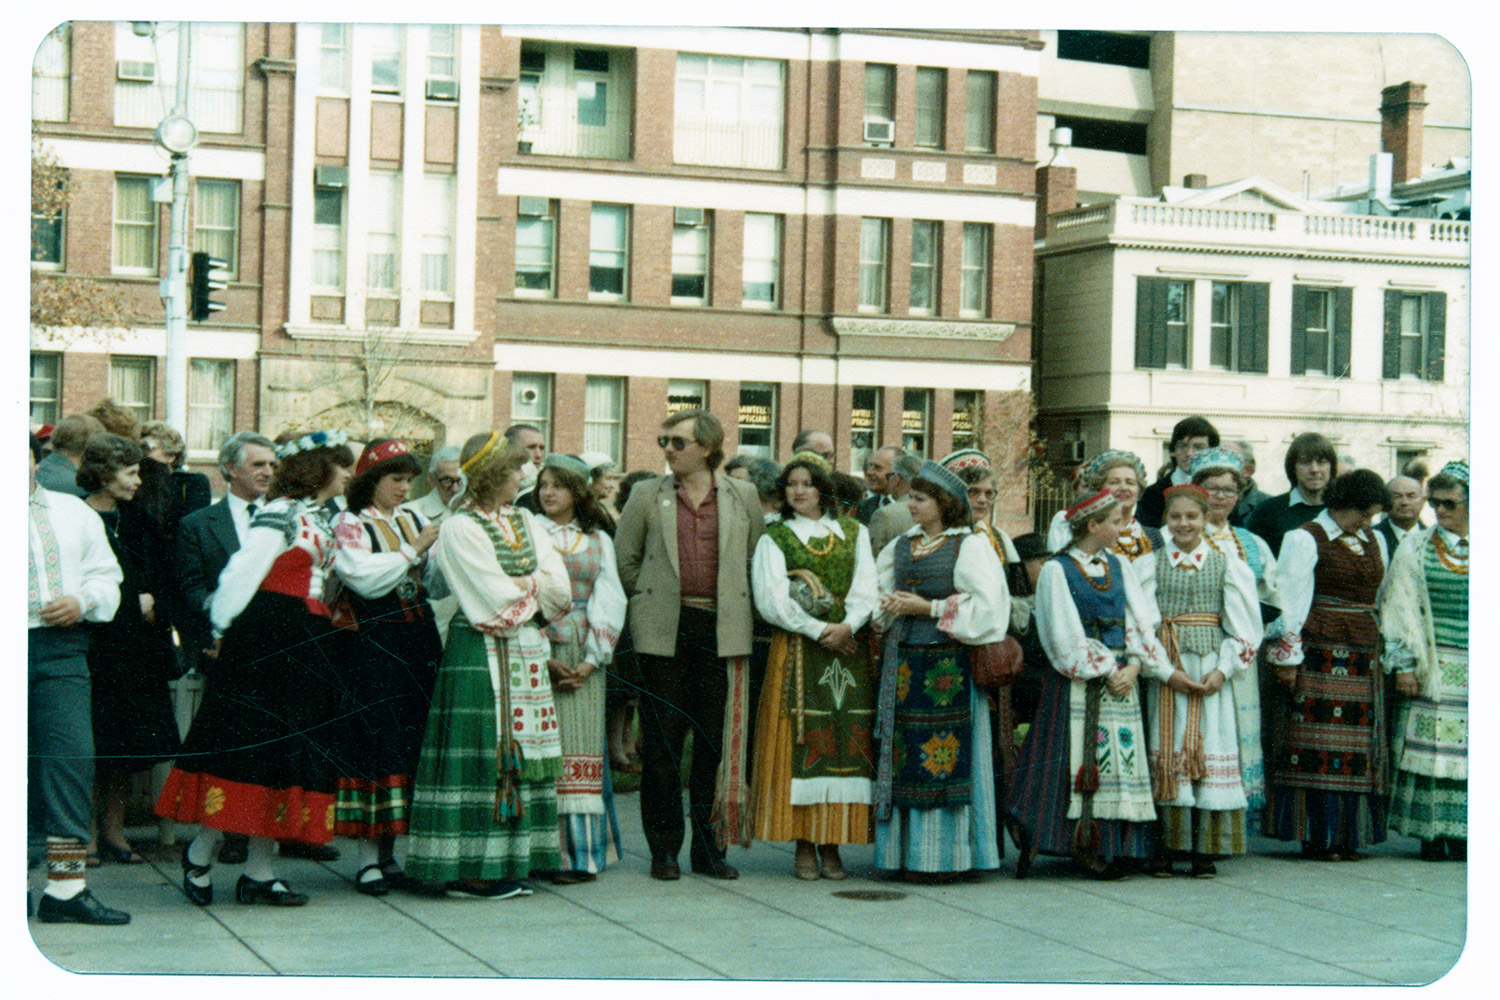 1982 m. Adelaidė, Australija. Australijos lietuvių, latvių ir estų protesto demonstracija prieš sovietinę okupaciją. LCVA